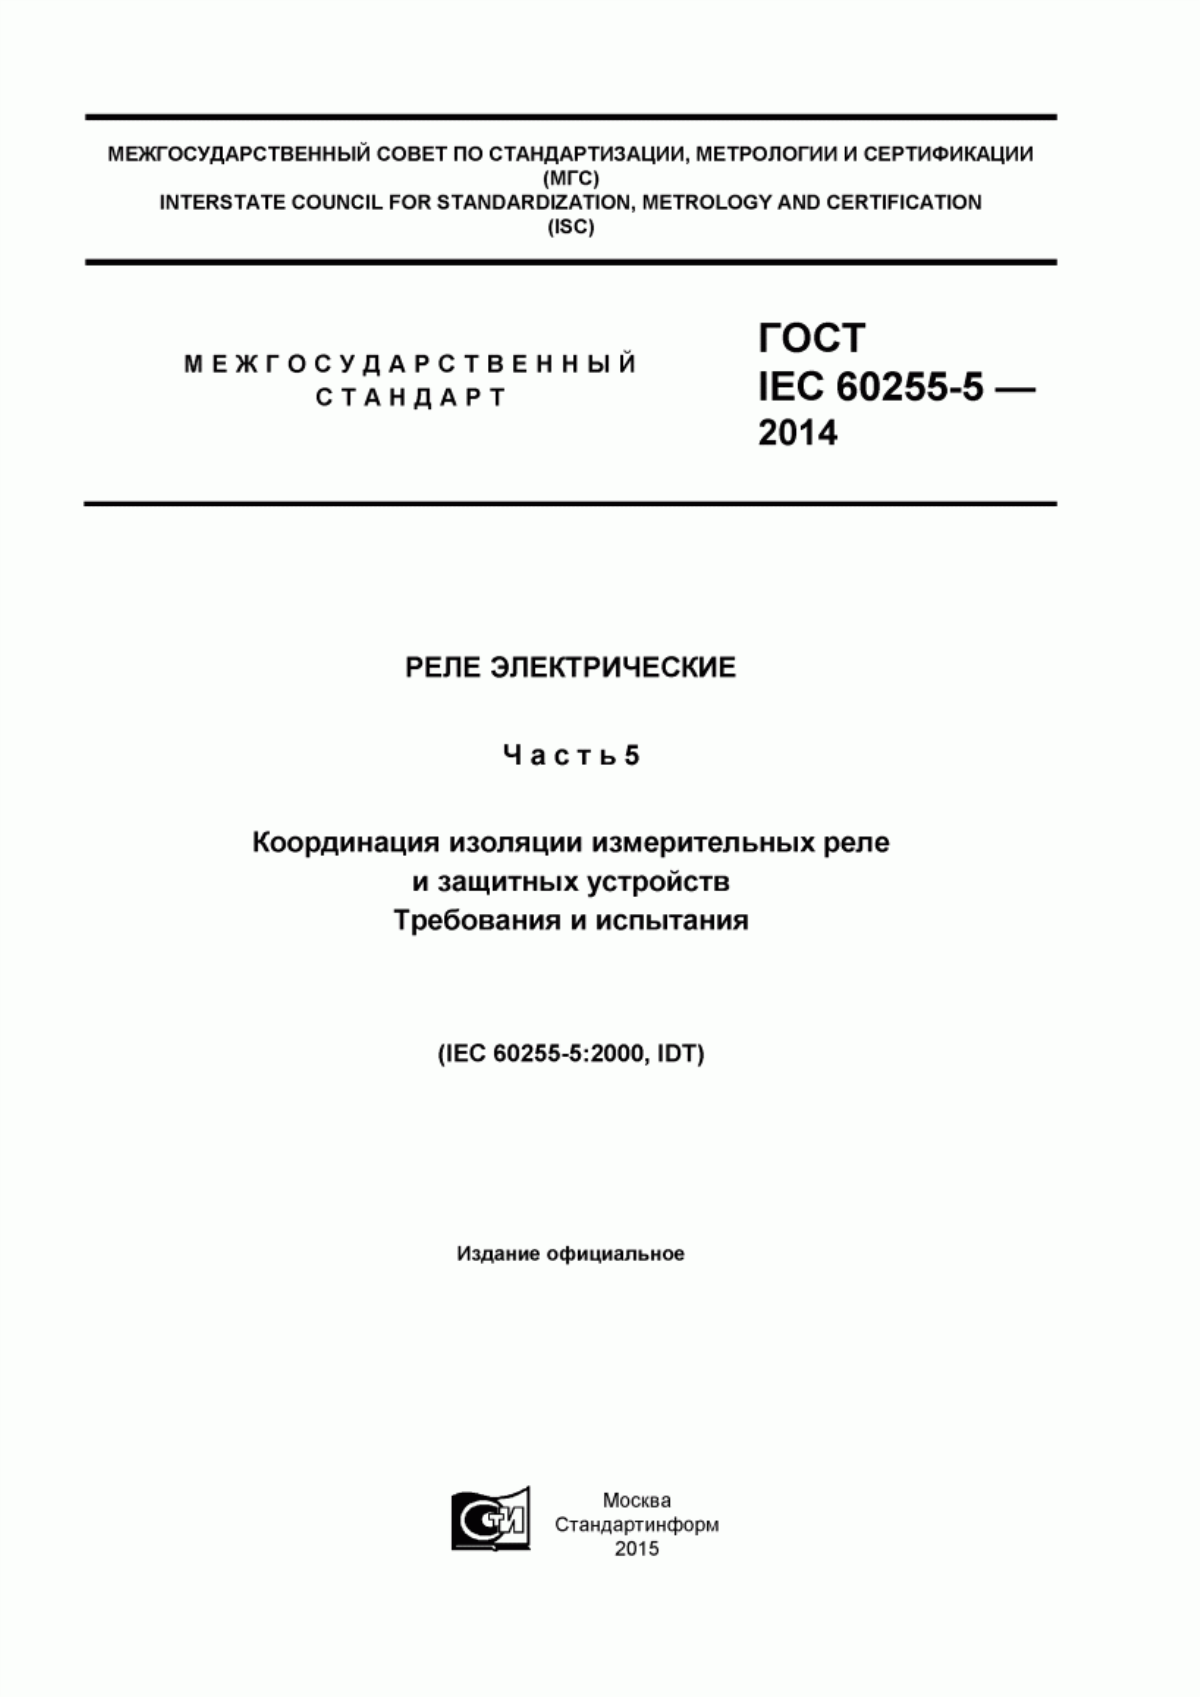 ГОСТ IEC 60255-5-2014 Реле электрические. Часть 5. Координация изоляции измерительных реле и защитных устройств. Требования и испытания